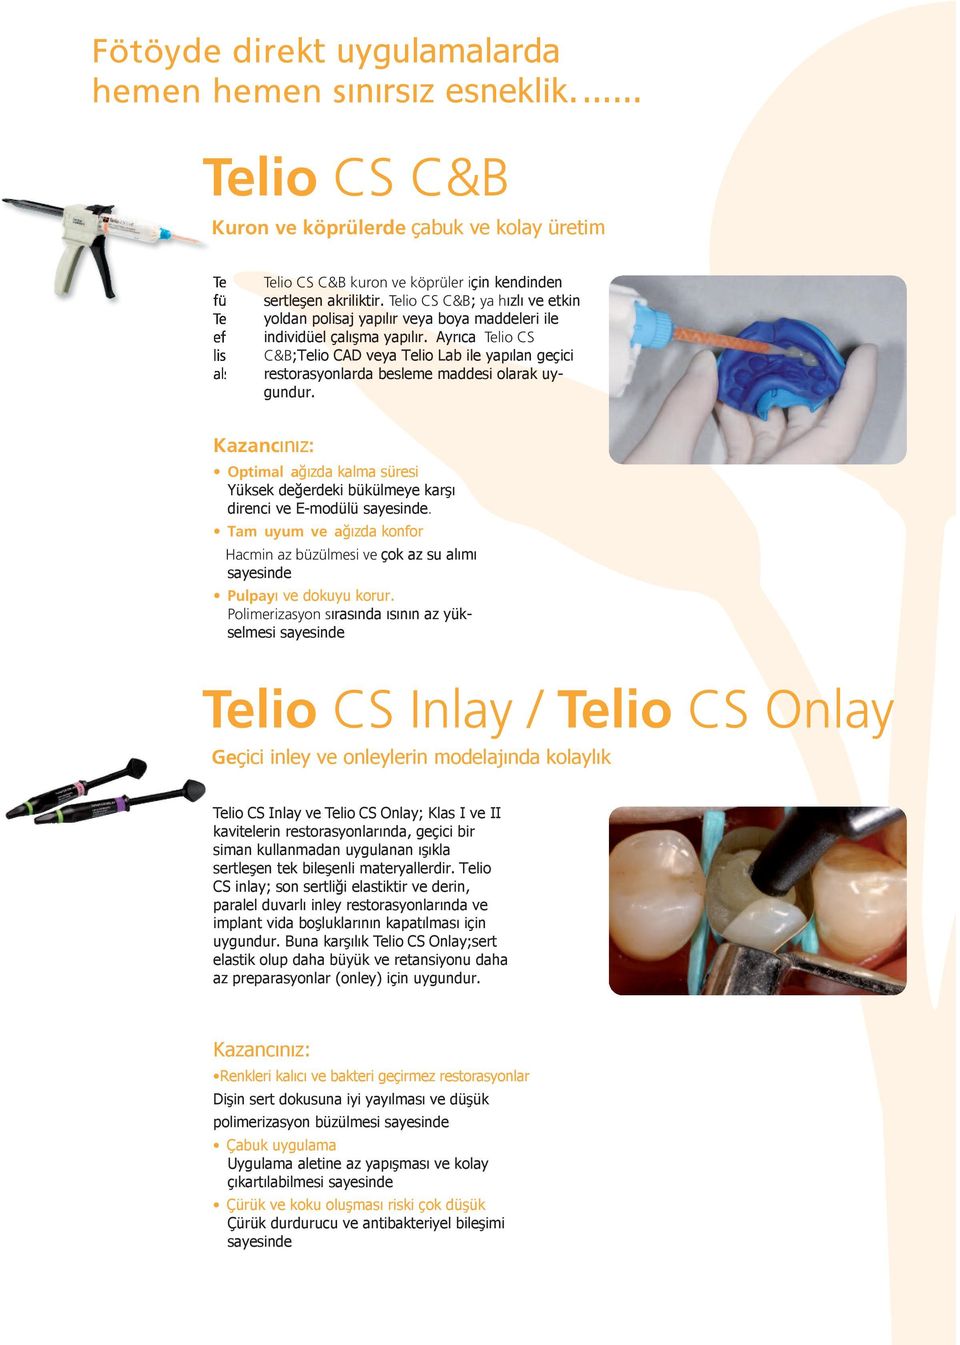 Telio CS C&B; ya hızlı ve etkin yoldan polisaj yapılır veya boya maddeleri ile individüel çalışma yapılır.